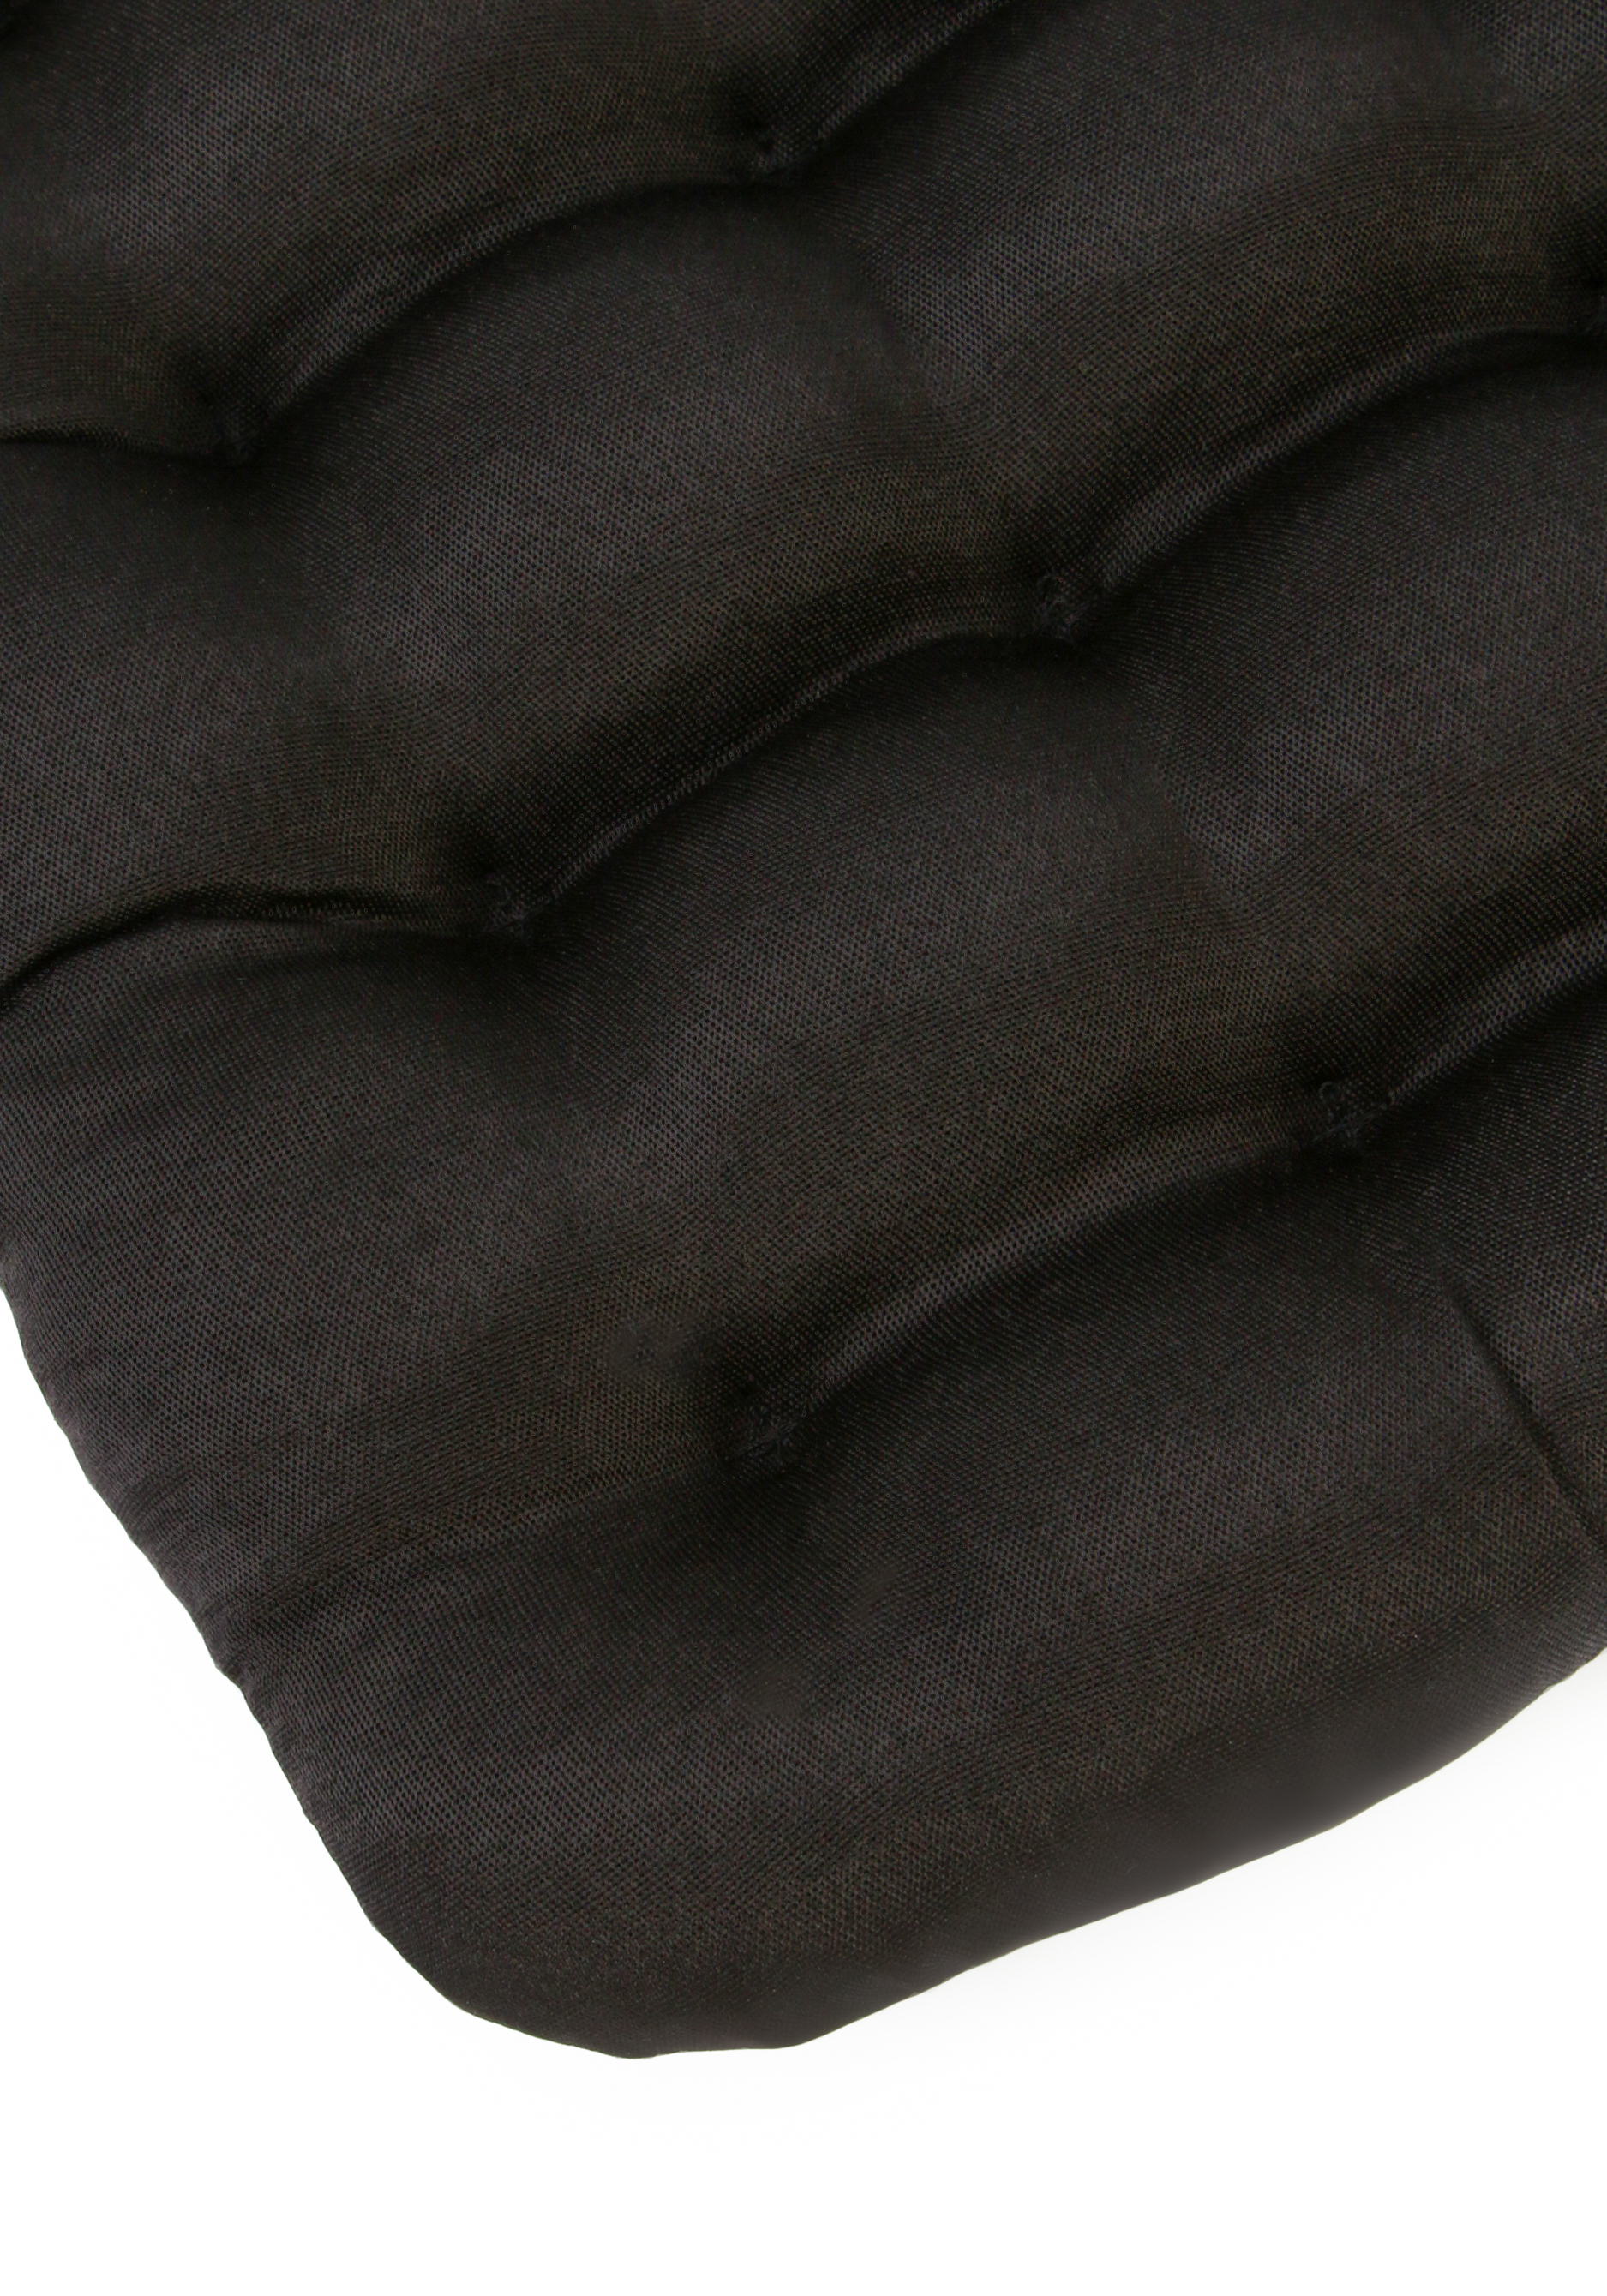 Сидушка с гречихой Bio-Textiles, цвет коричневый, размер 40*40 - фото 4